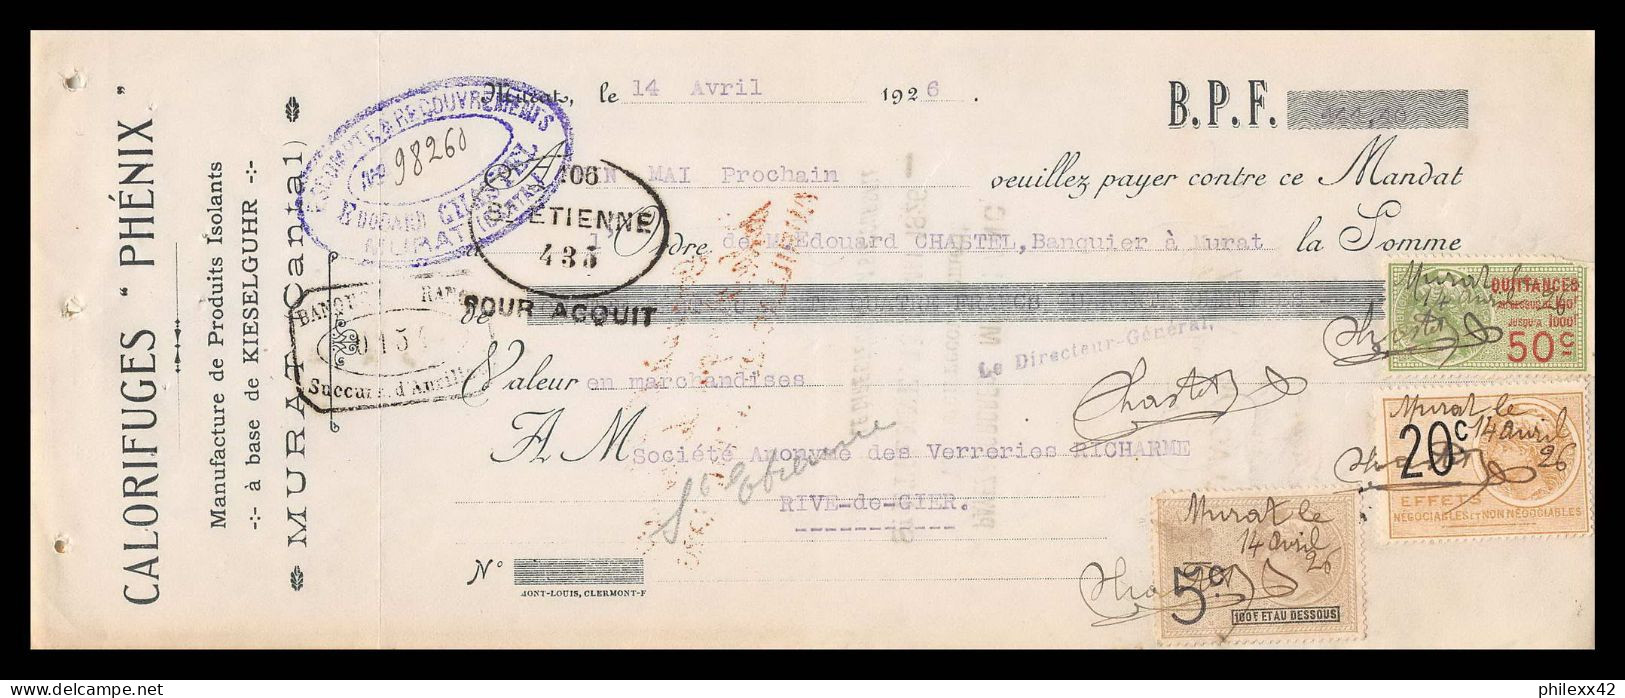 12979 Calorifuges Phénix Murat Cantal Verreries Richarme Rive De Gier Loire 1926 Timbre Fiscal Fiscaux France - Covers & Documents